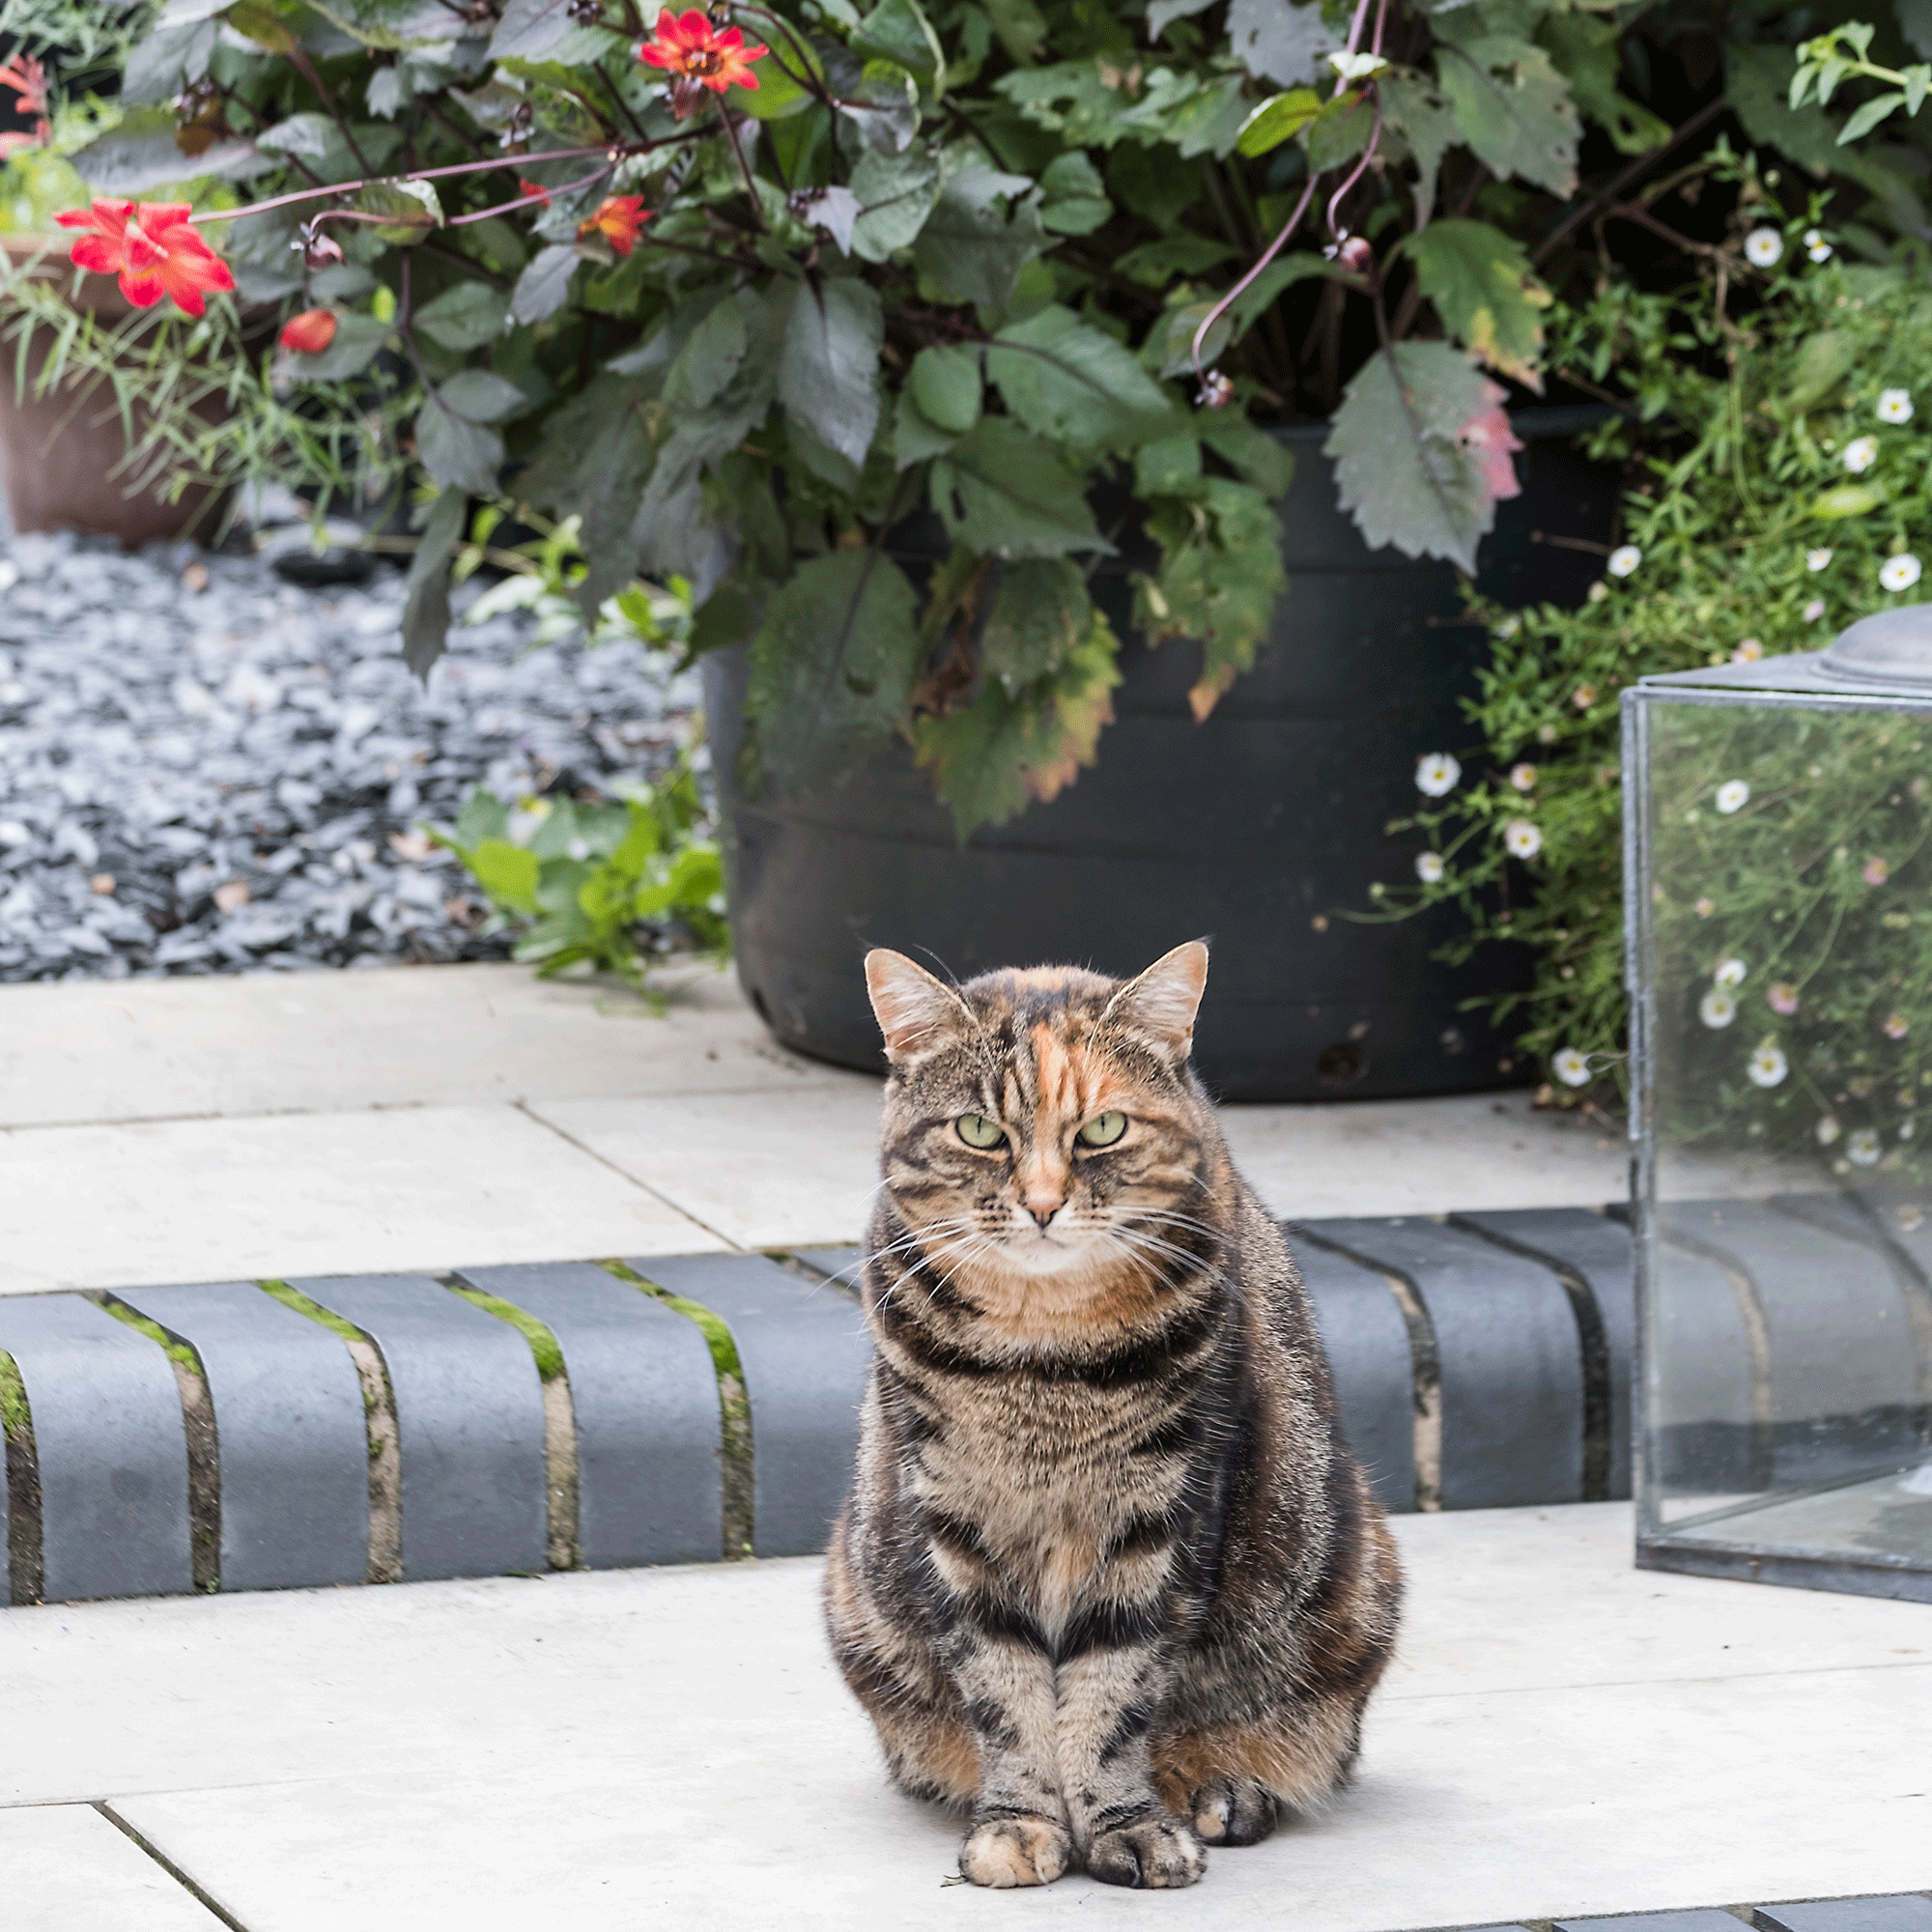 cat in garden on patio